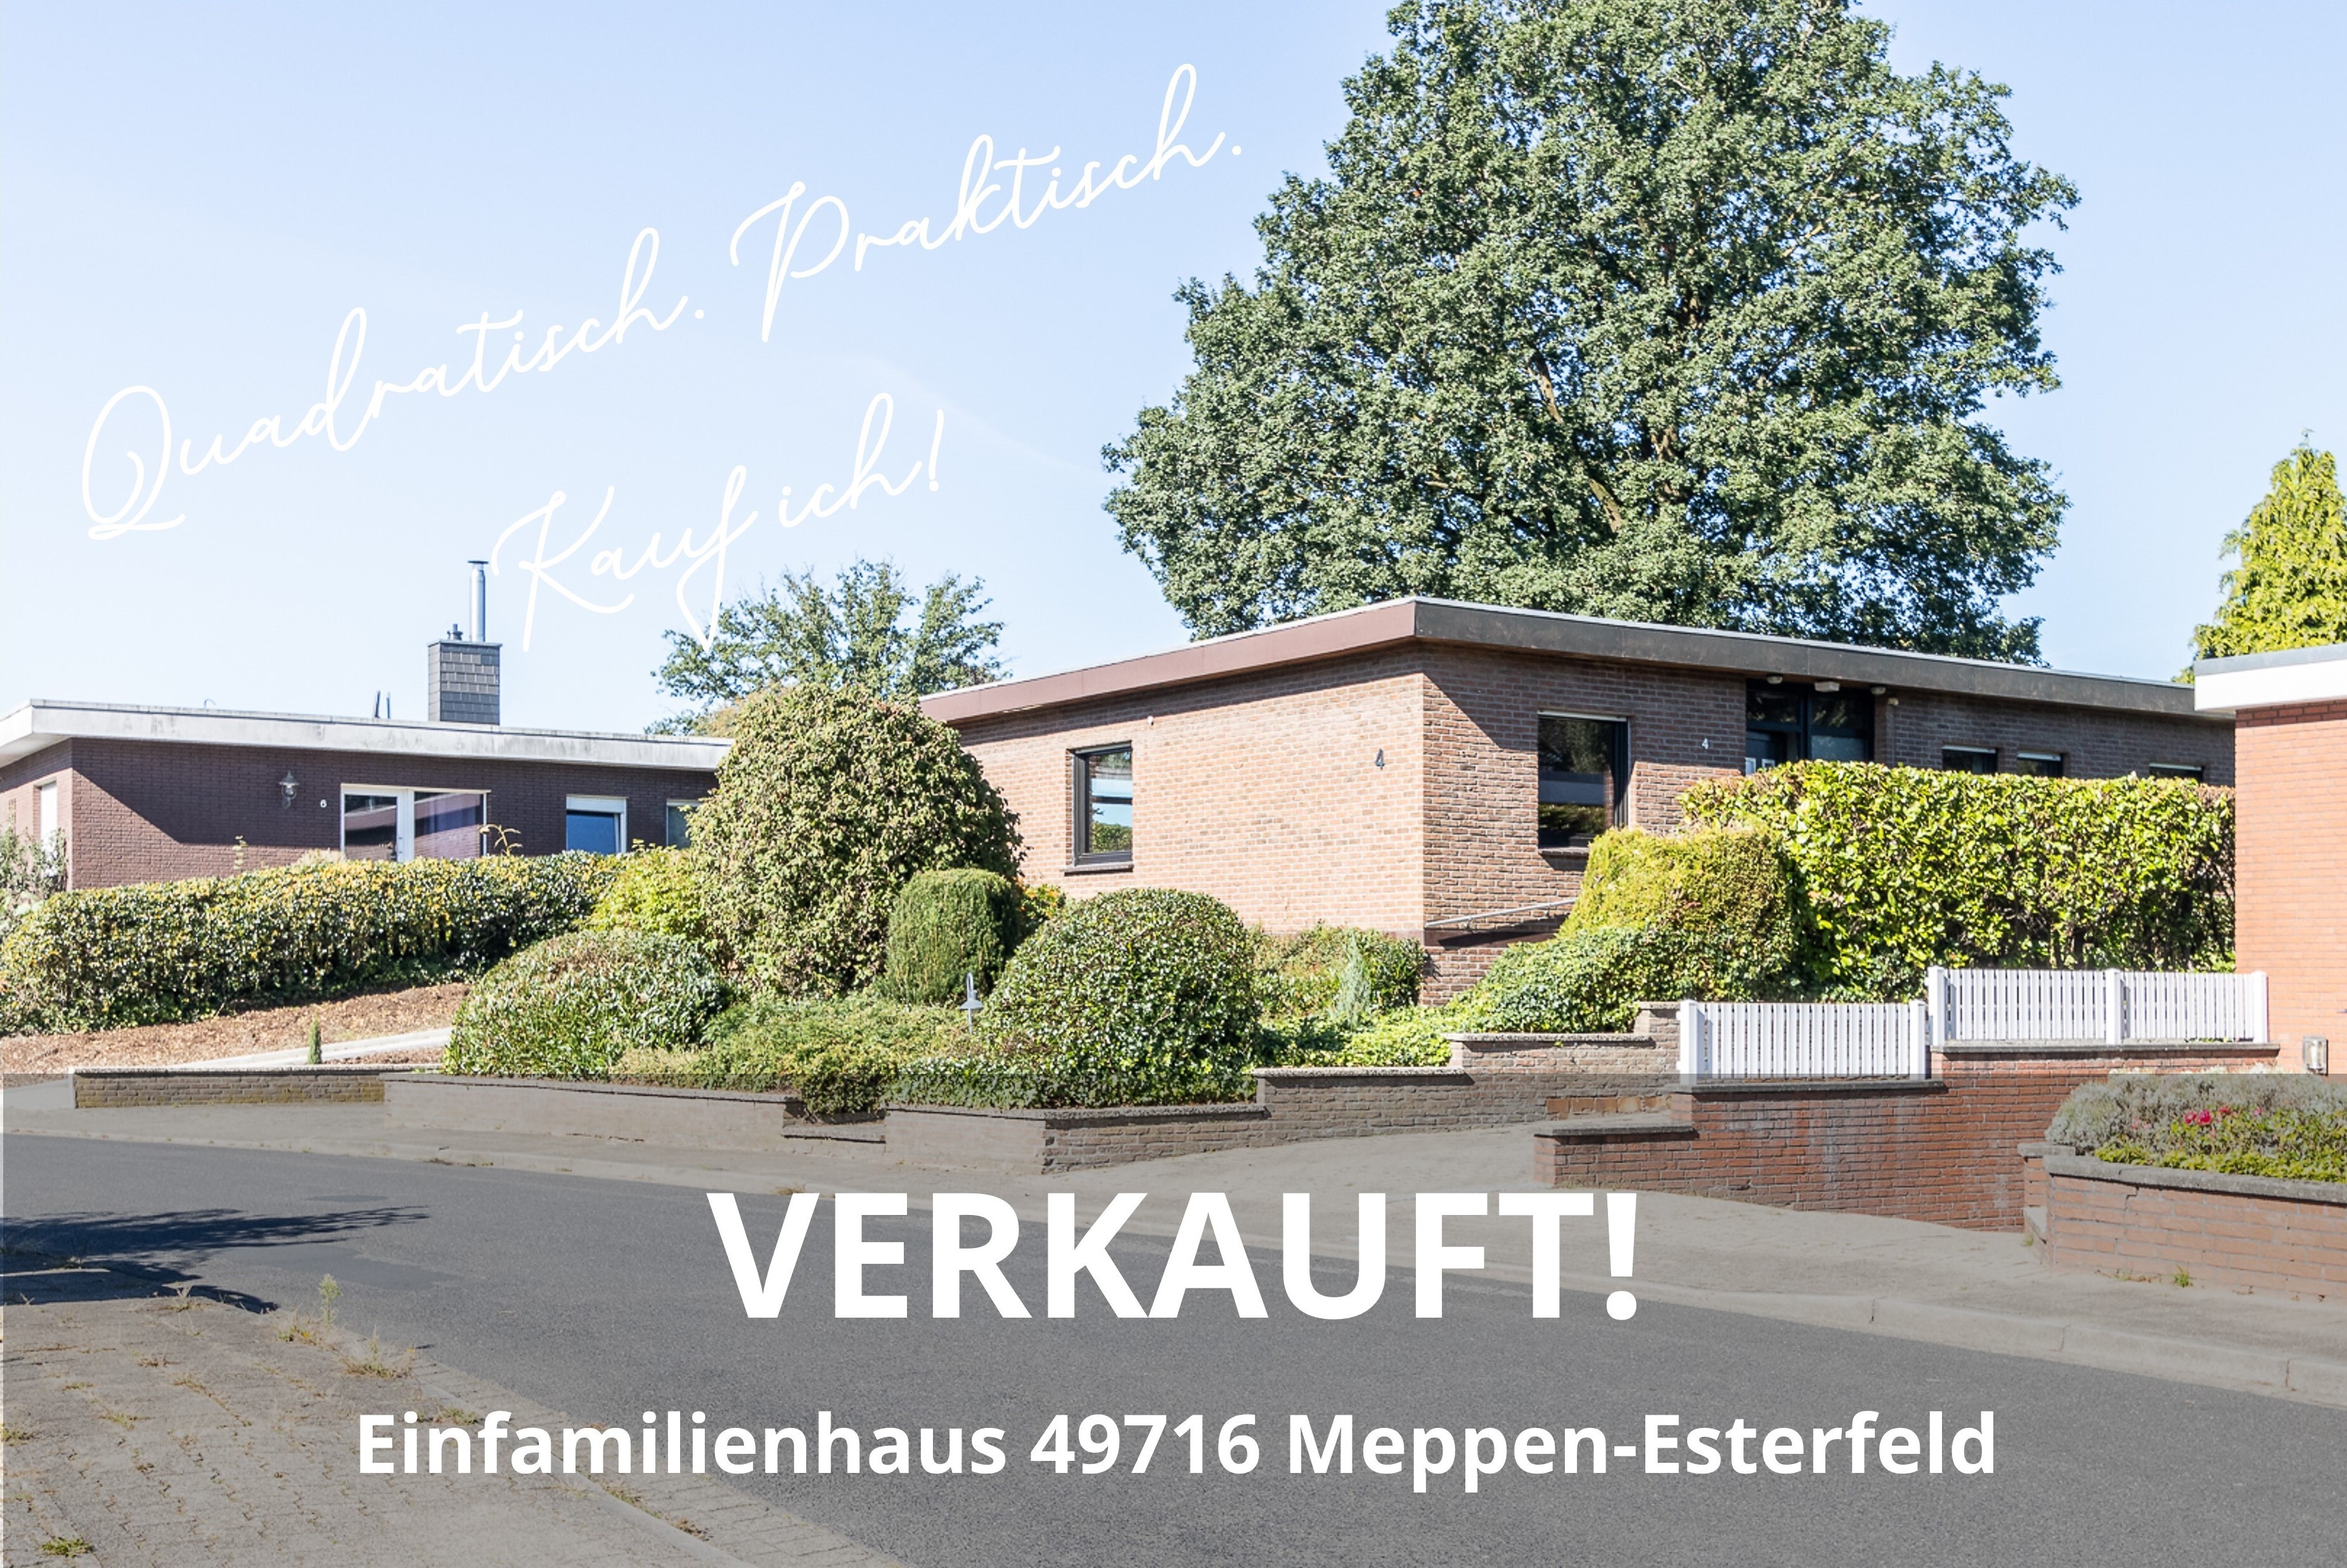 Einfamilienhaus 49716 Meppen-Esterfeld